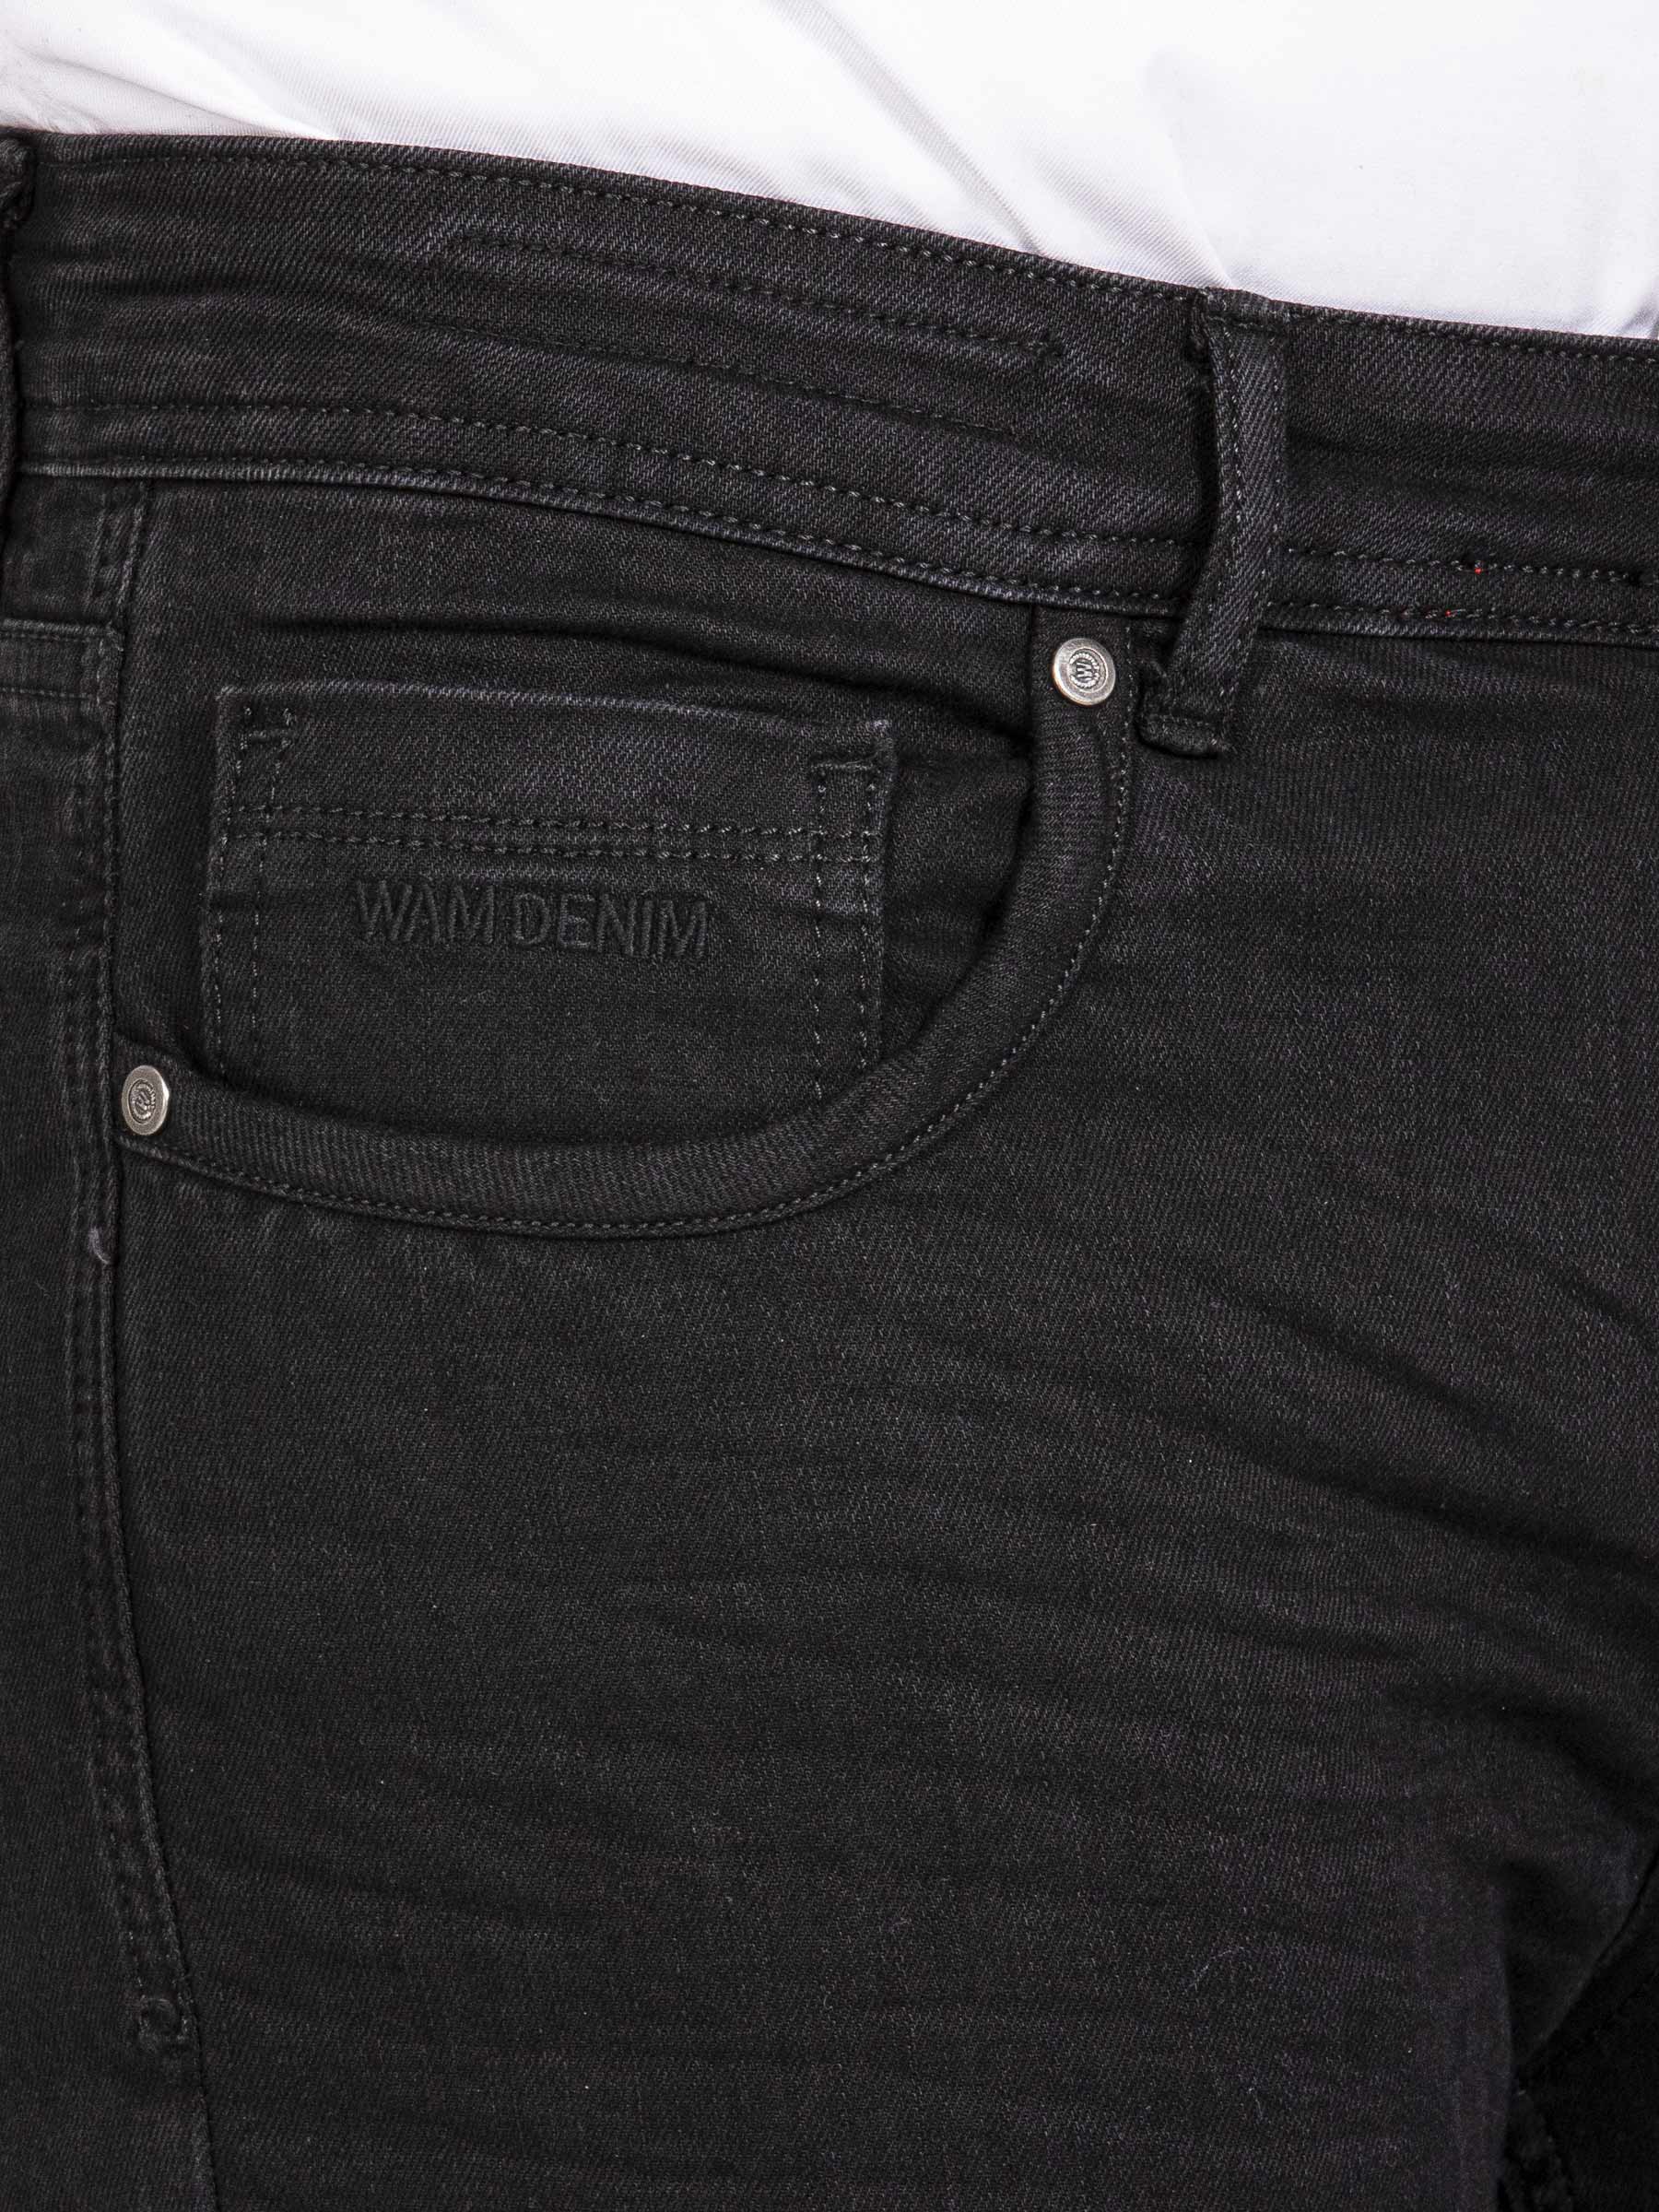 Jeans 72336 Spalding Black 